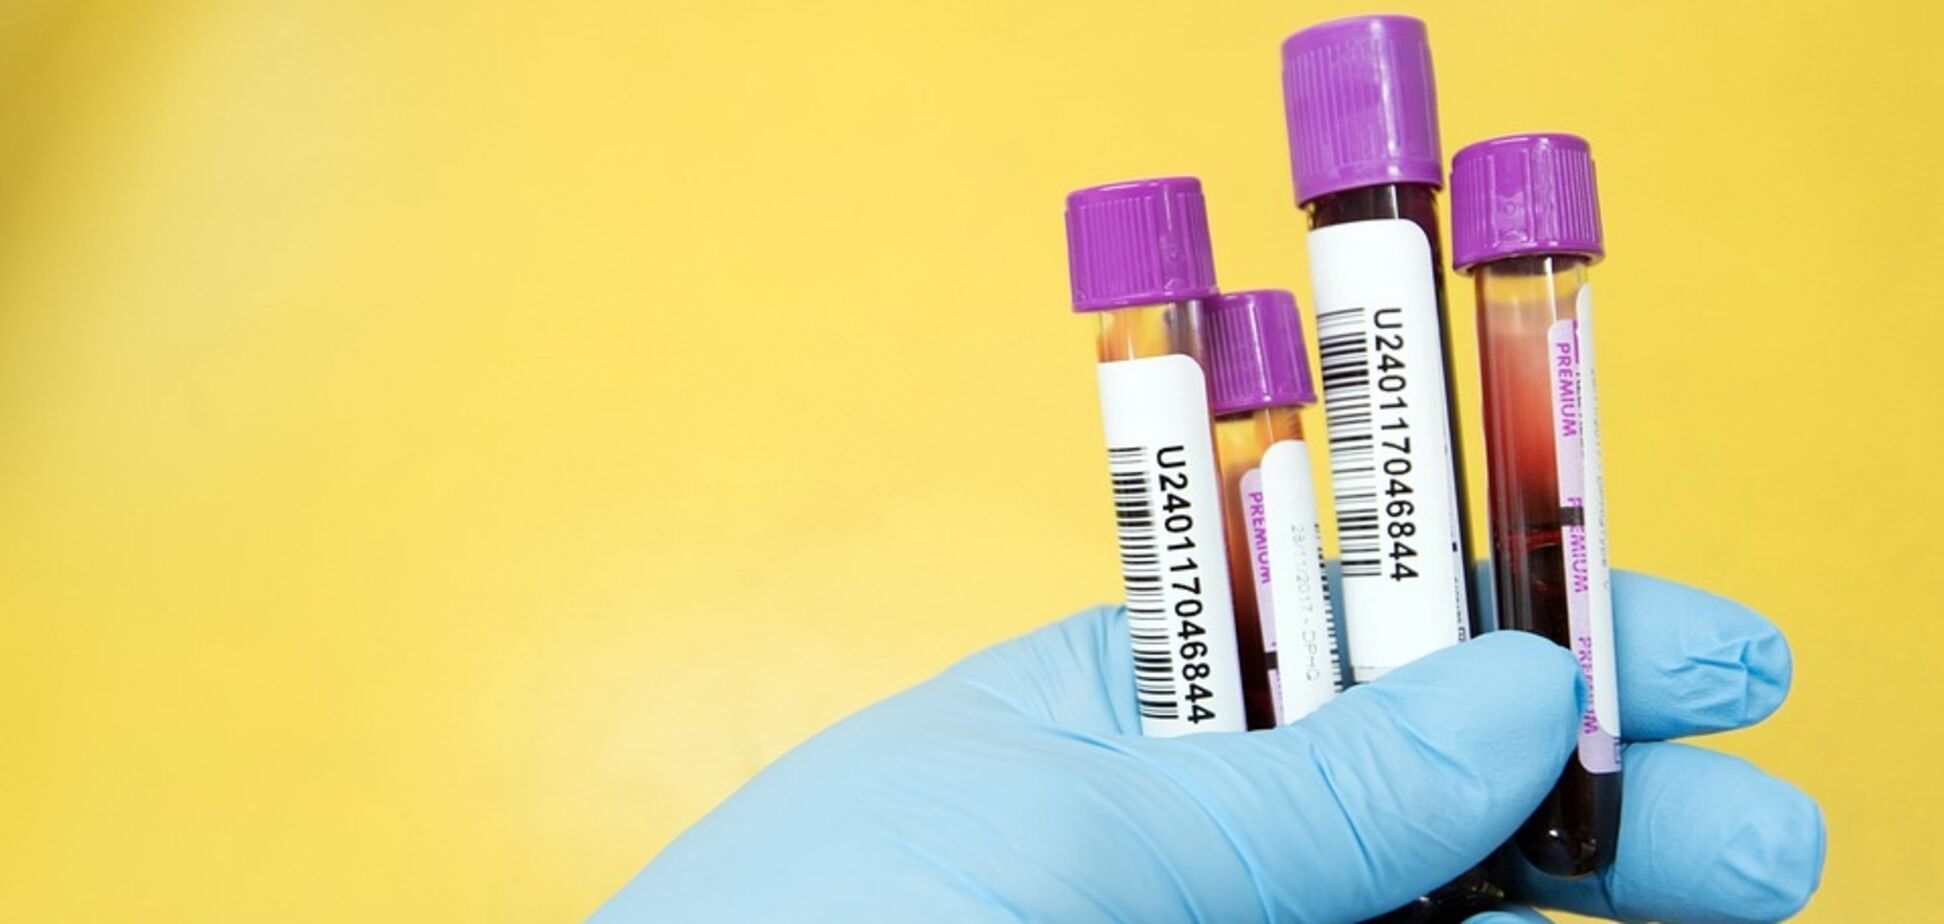 Существует два основных типа тестов на коронавирус